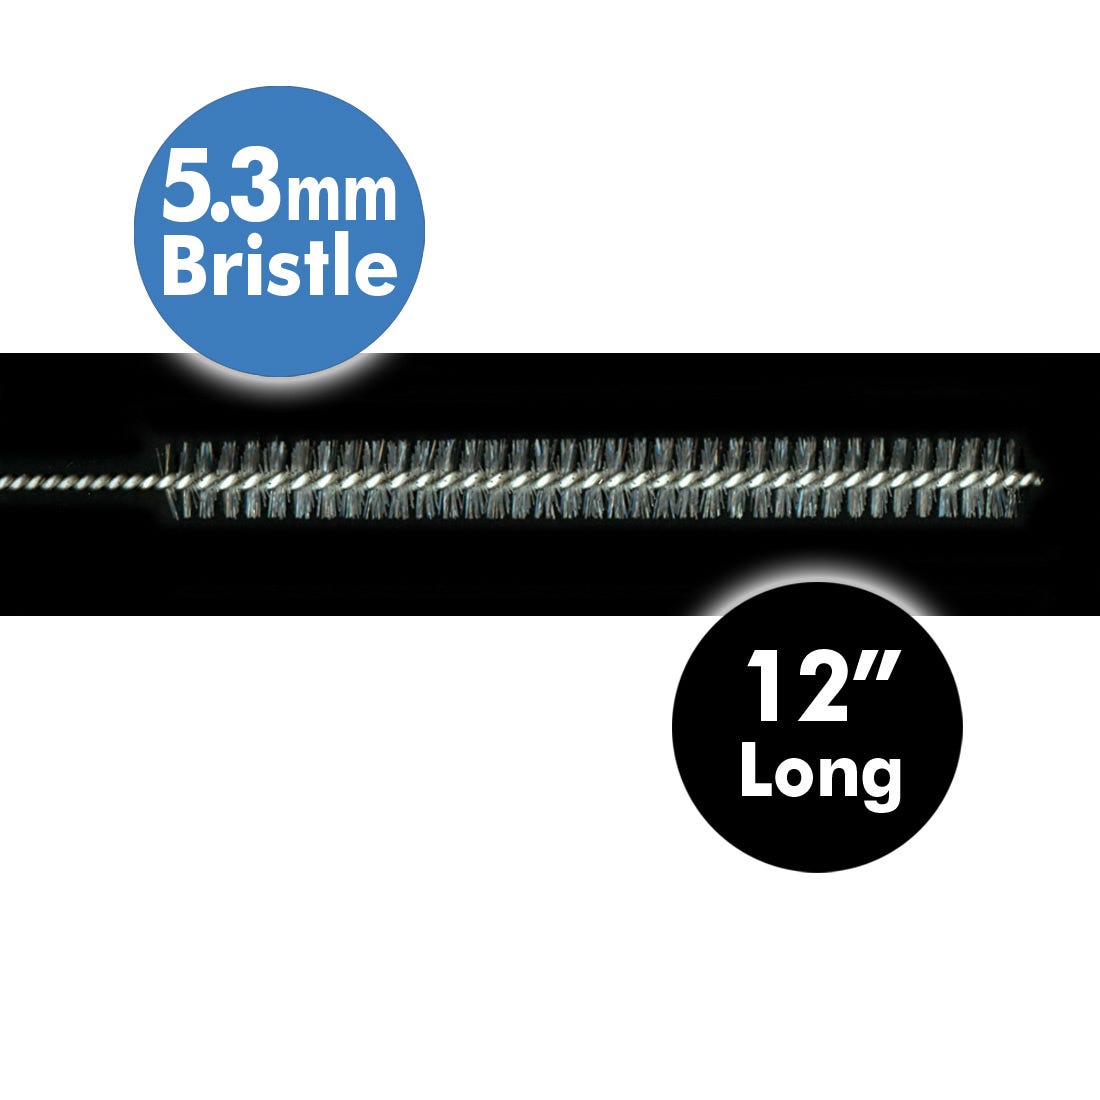 ACE Autoclavable Cleaning Brushes, medium, 5.3mm bristle diameter, 12" long -12/Pkg